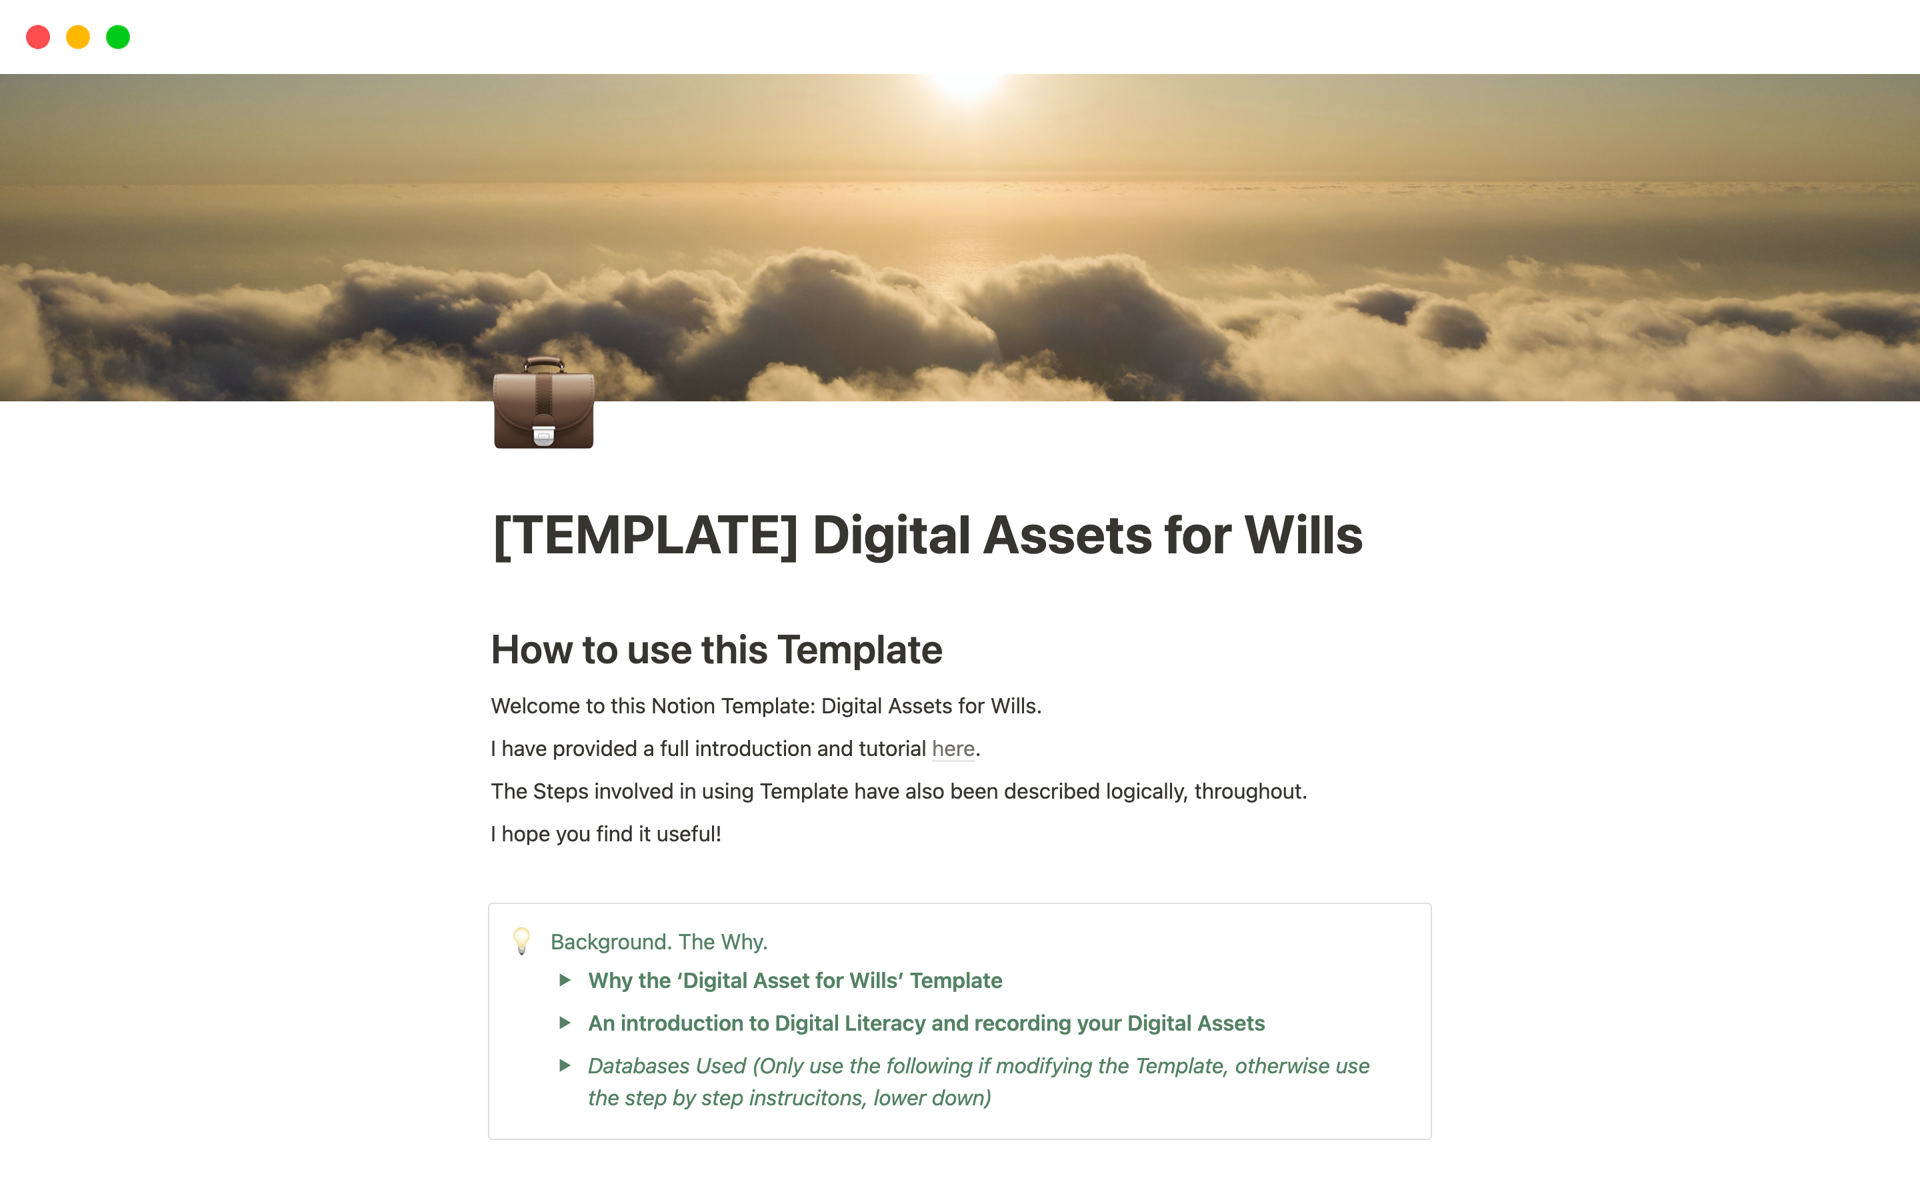 Vista previa de plantilla para Digital Assets for Wills